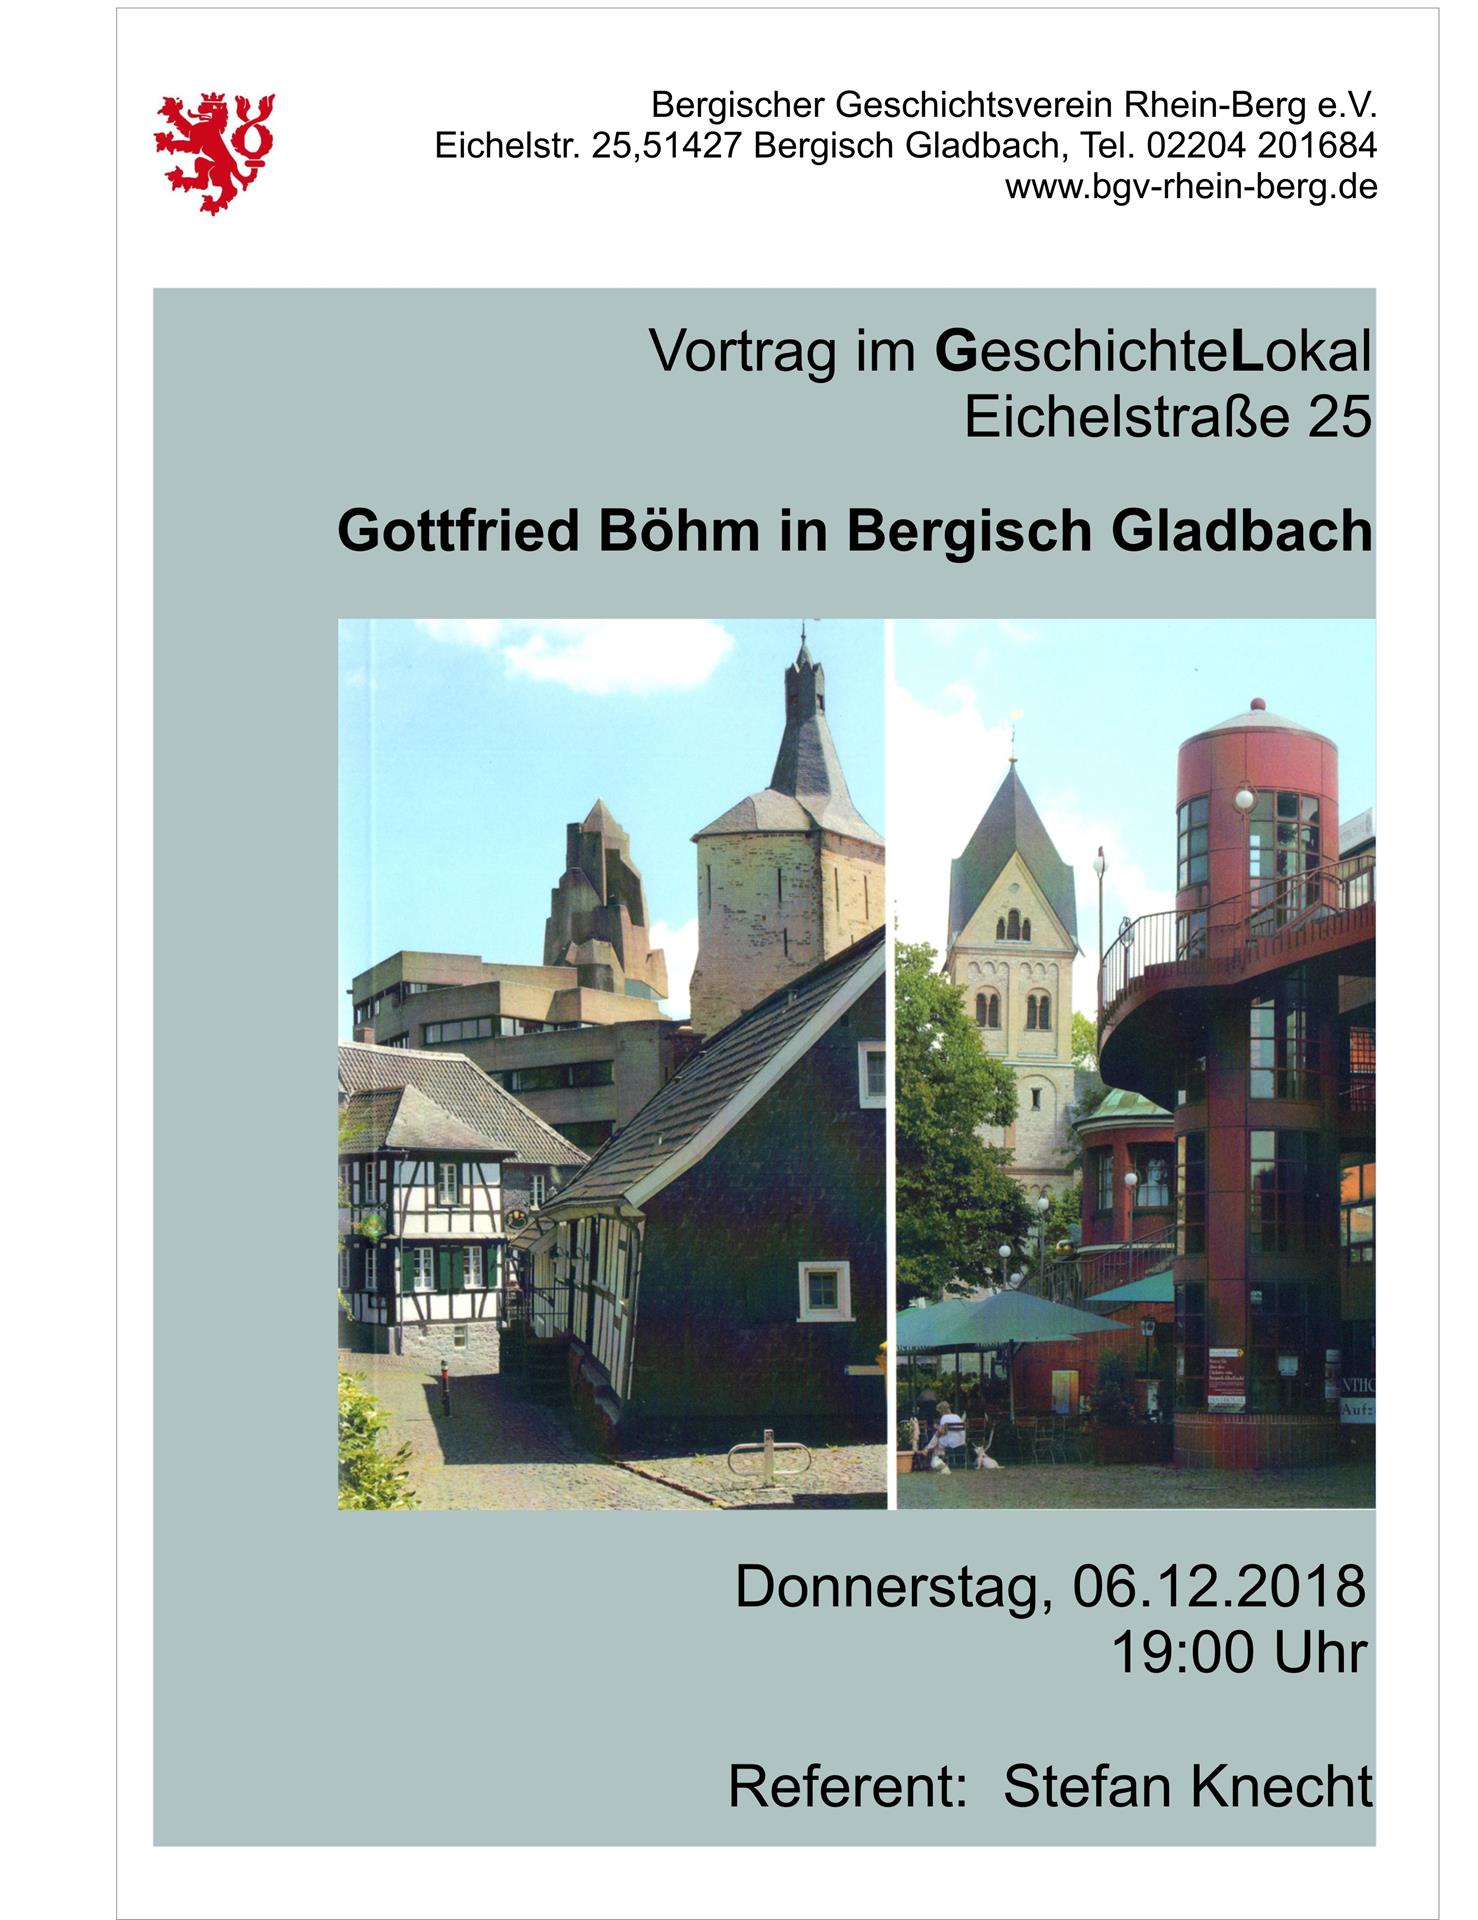 Gottfried Böhm in Bergisch Gladbach